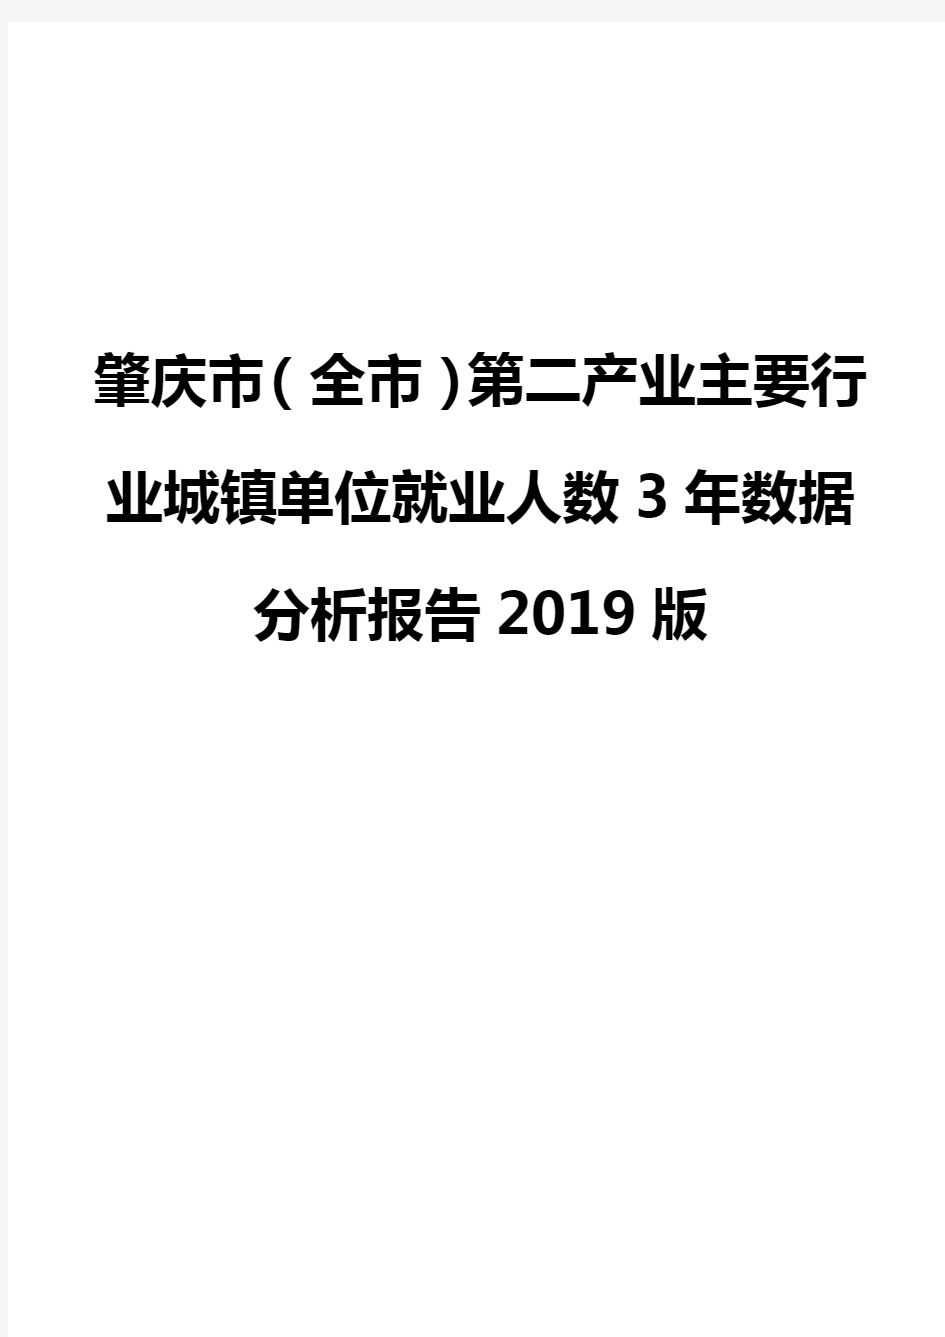 肇庆市(全市)第二产业主要行业城镇单位就业人数3年数据分析报告2019版